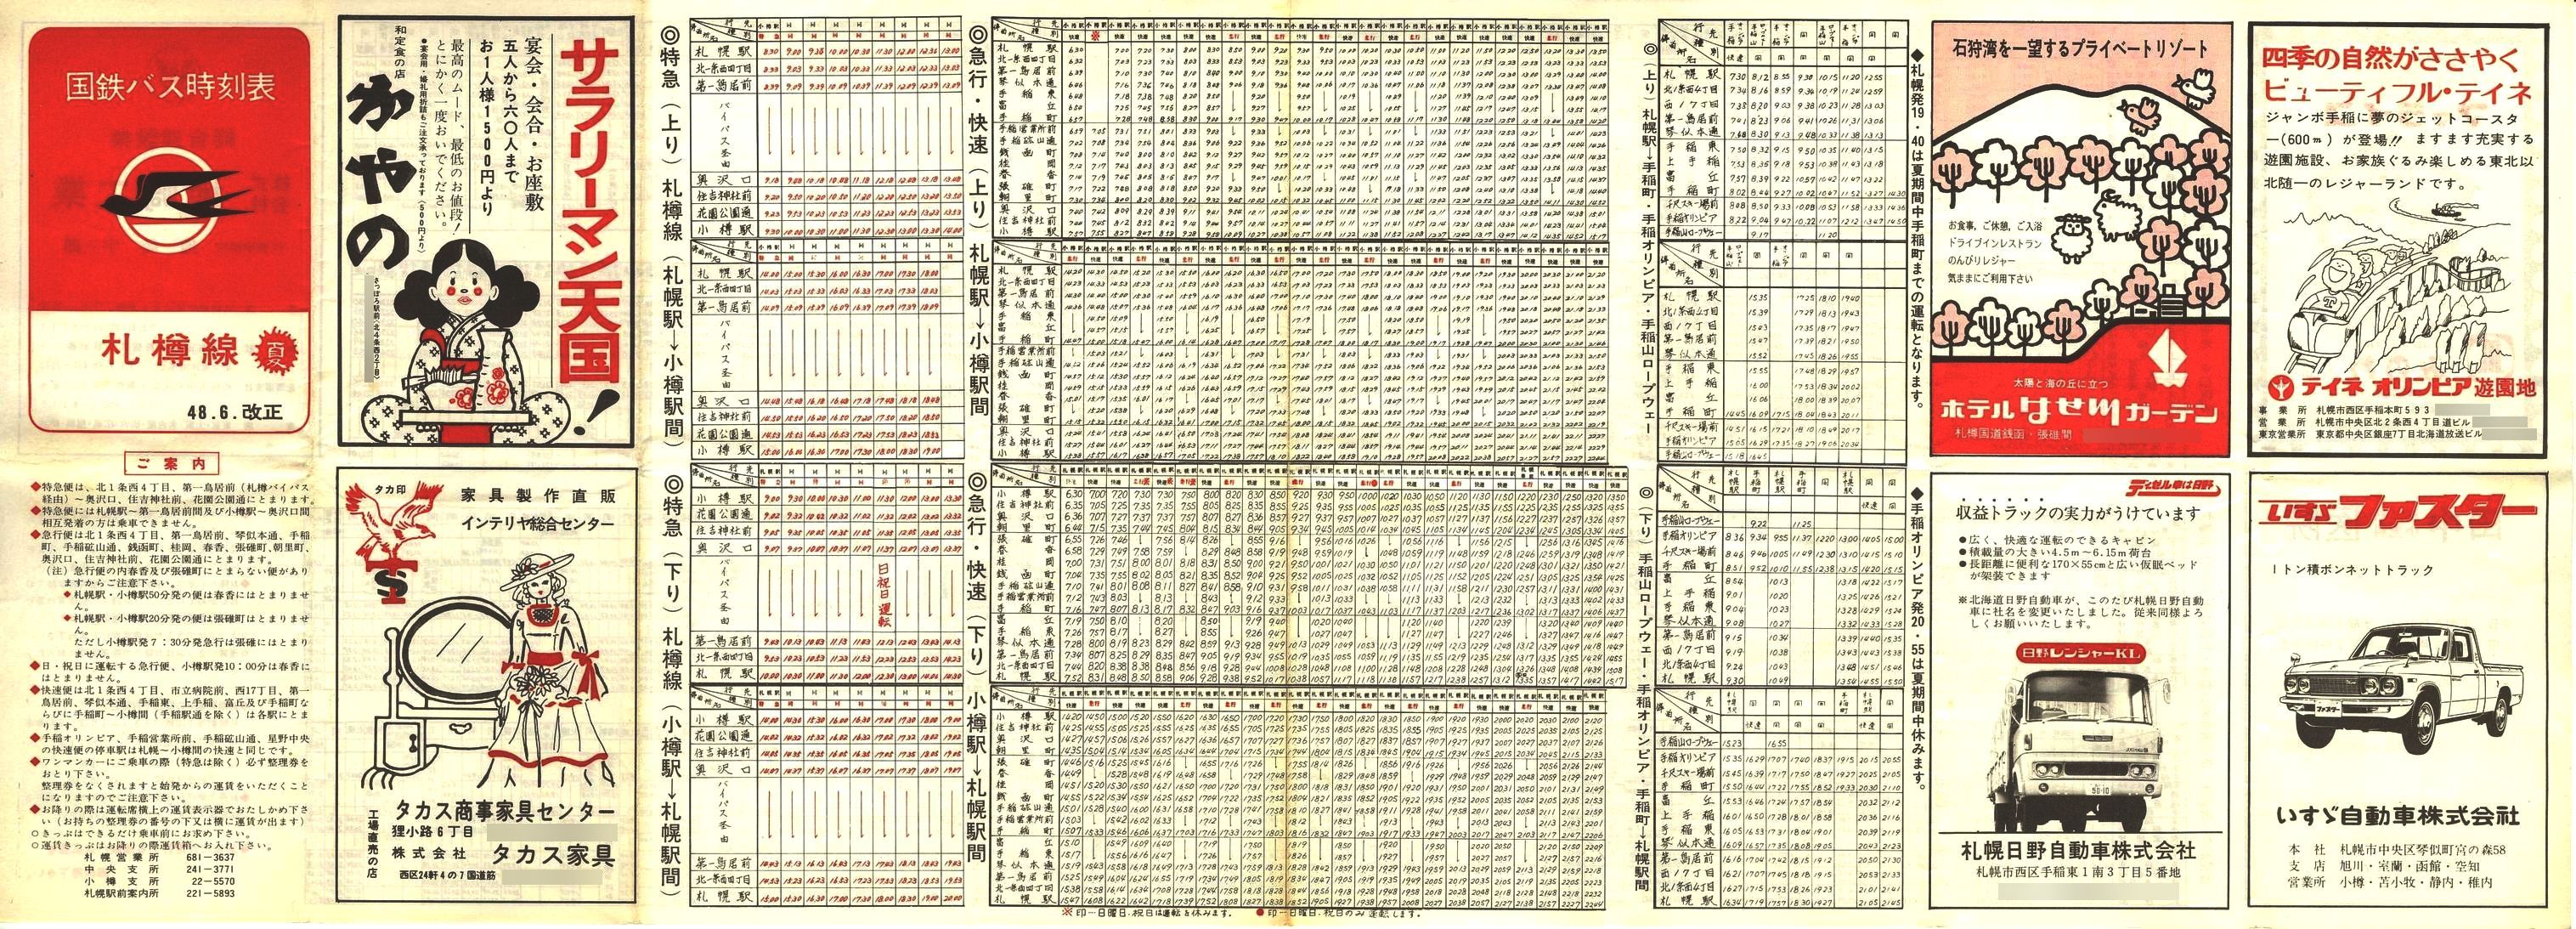 1973-06-07改正_国鉄バス_札樽線時刻表表面